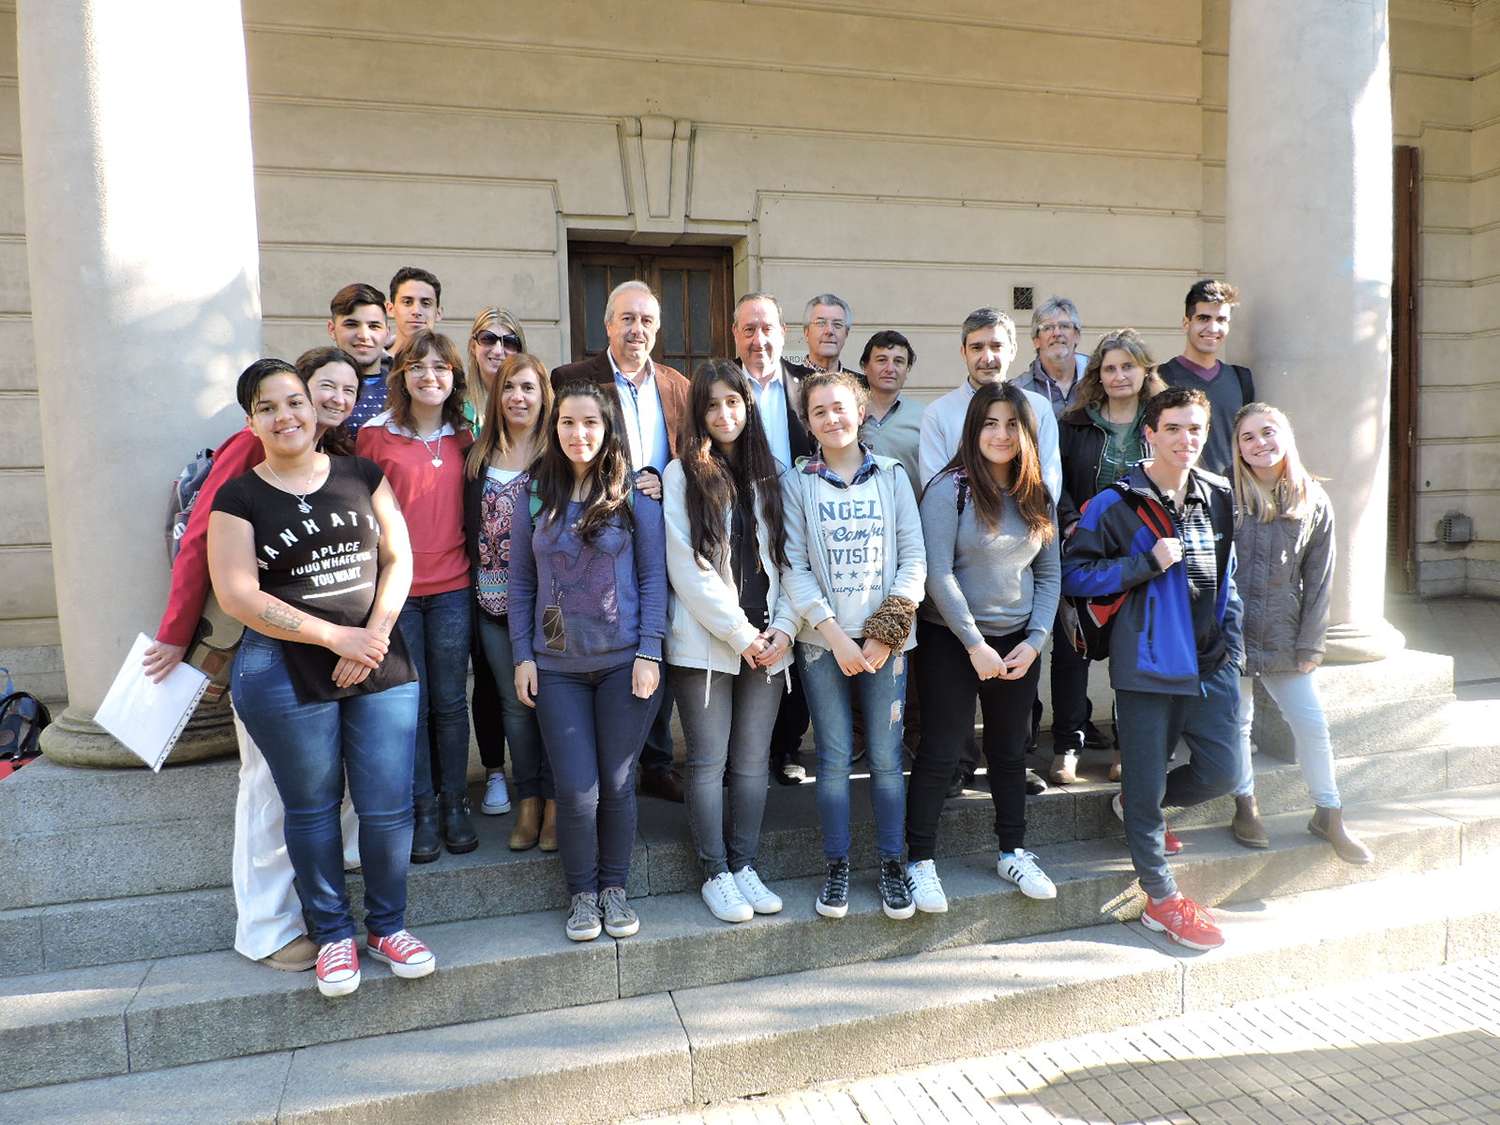 Participantes del concurso “Mercosur en la Escuela” viajaron a Mar del Plata